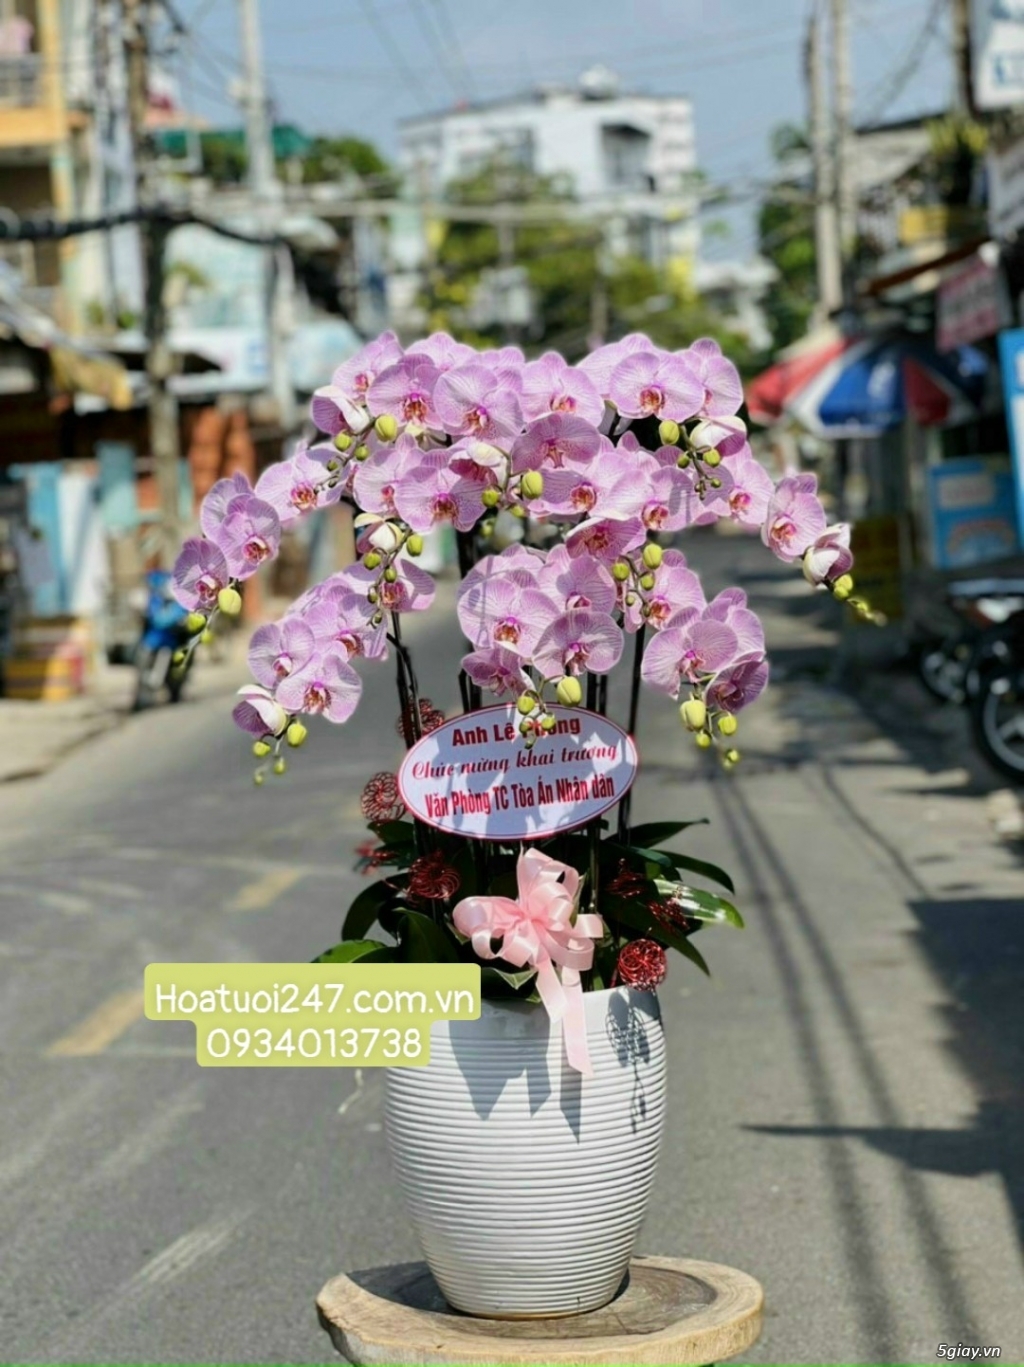 Vườn hoa tươi Lan Hồ Điệp 247 ấn tượng giữa lòng Sài Gòn - 3